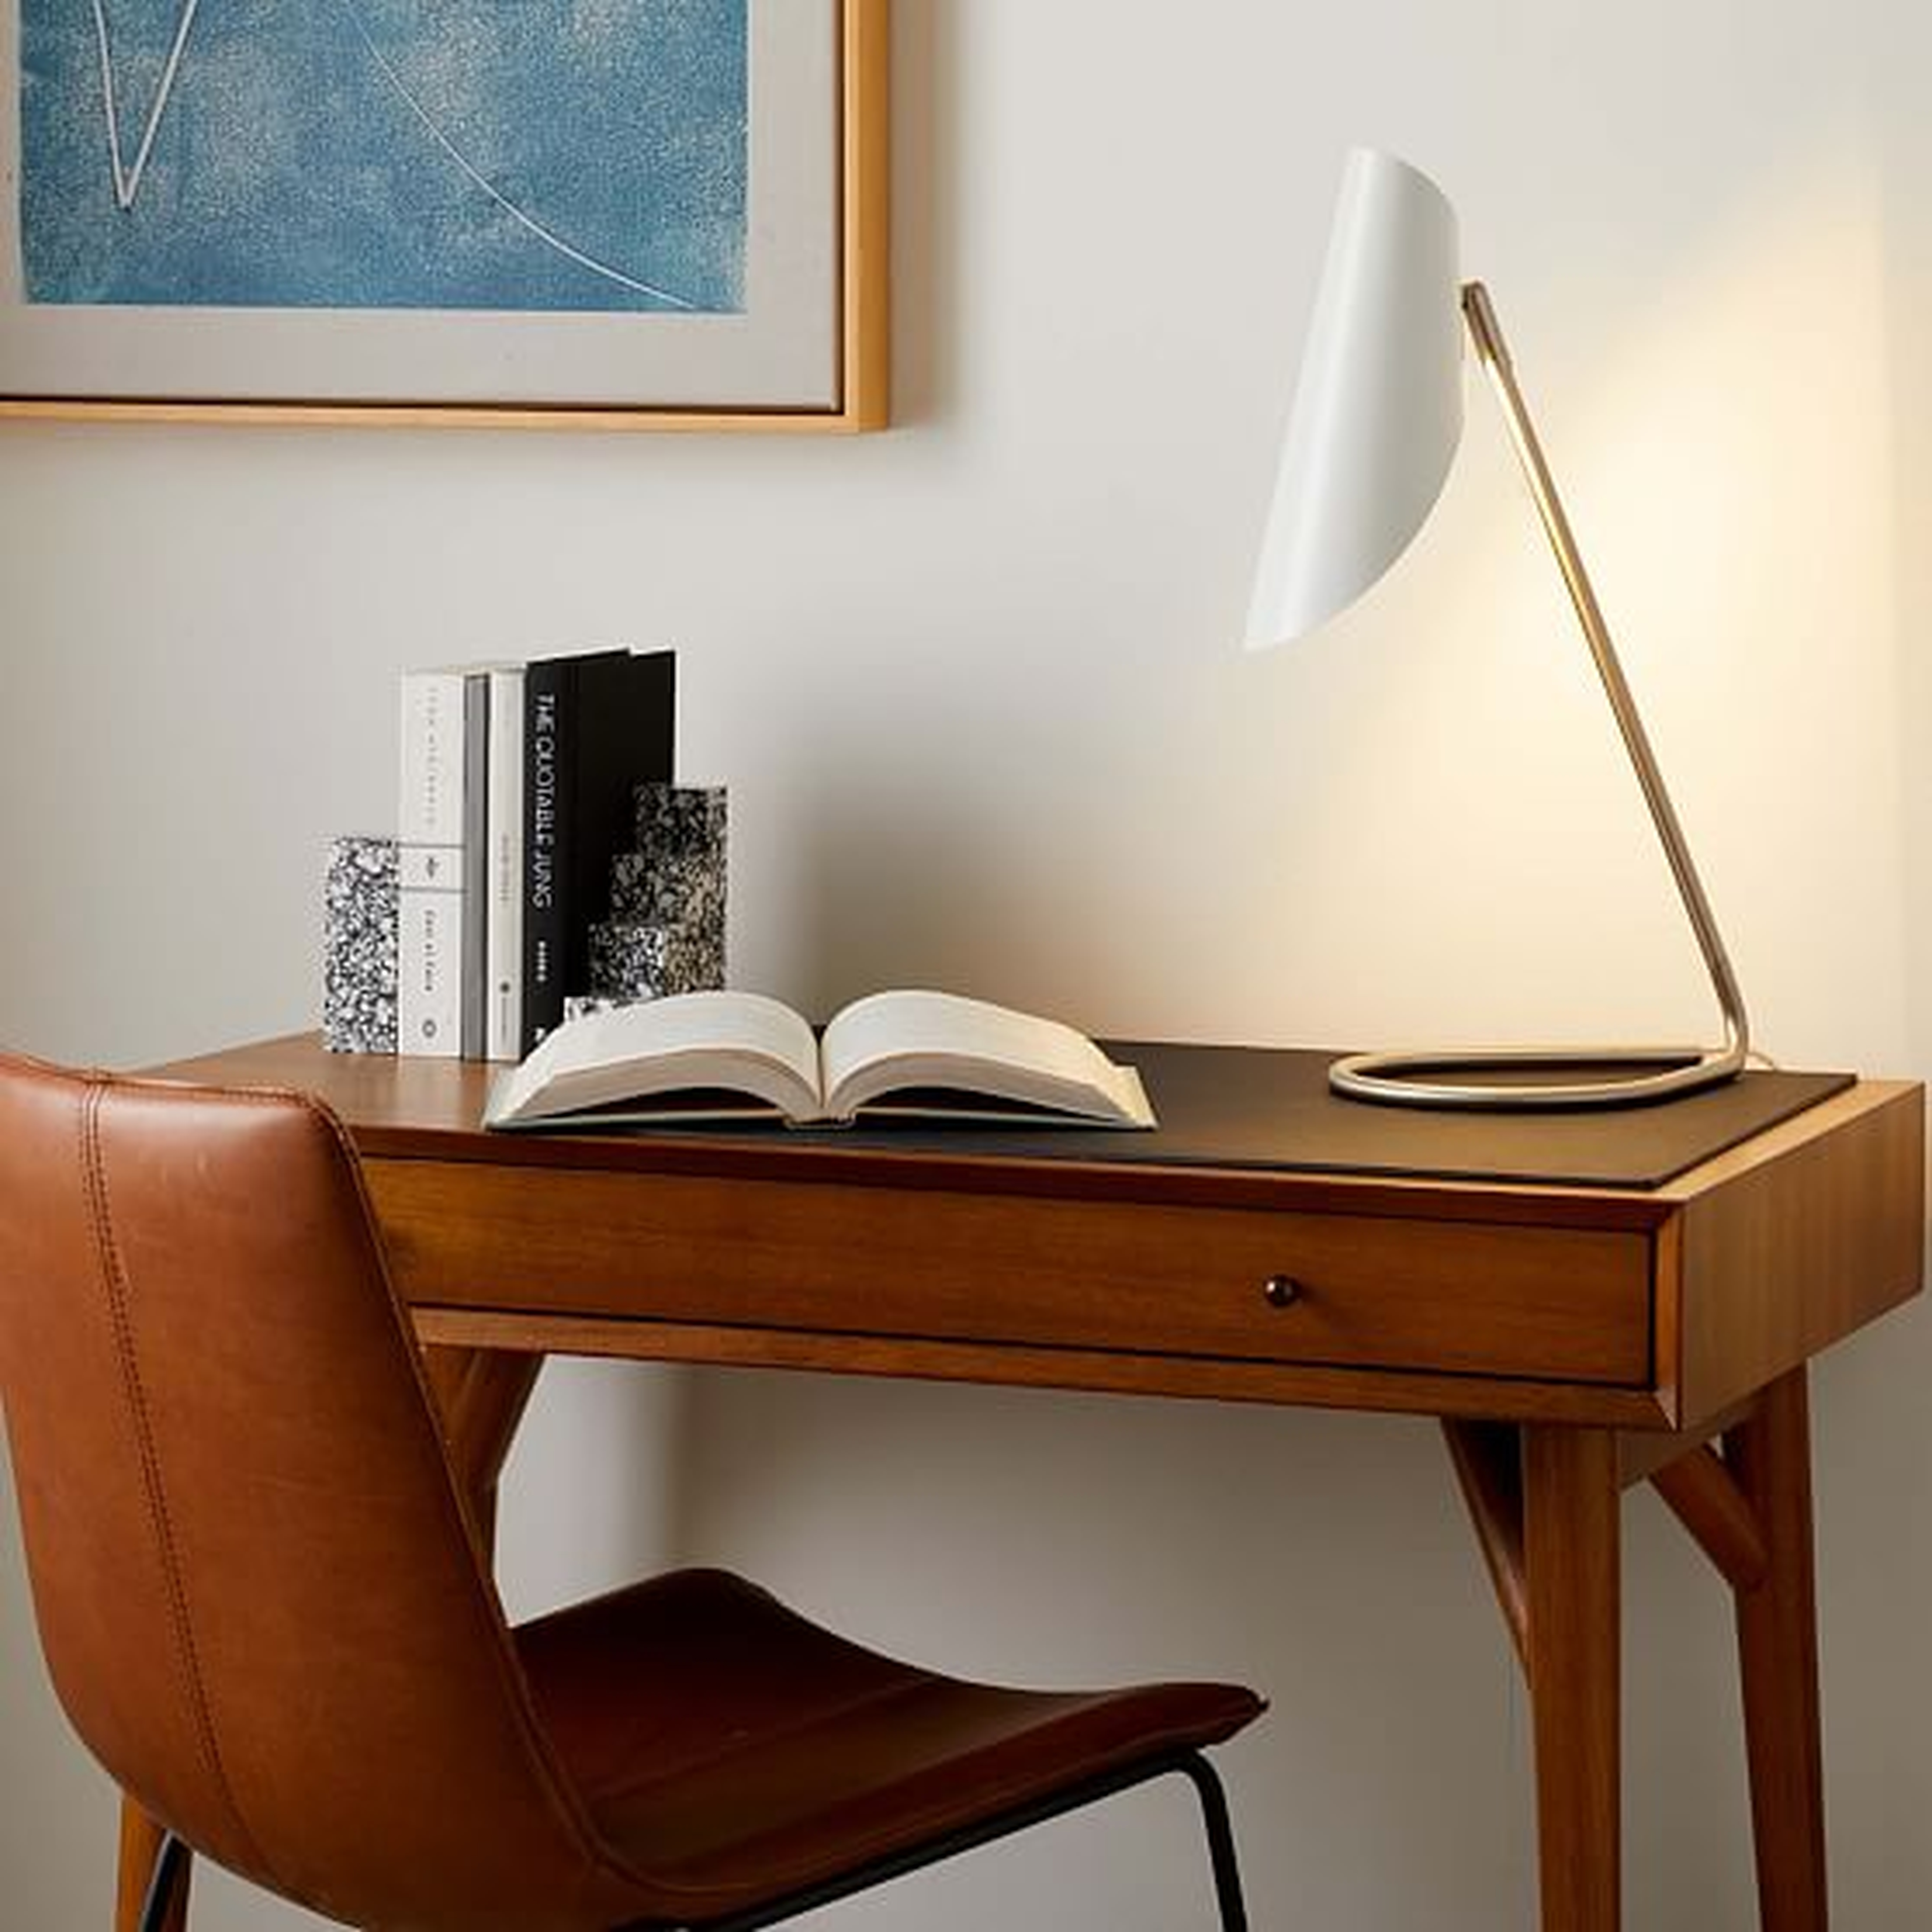 Curl Desk Lamp, White, Brushed Nickel - West Elm